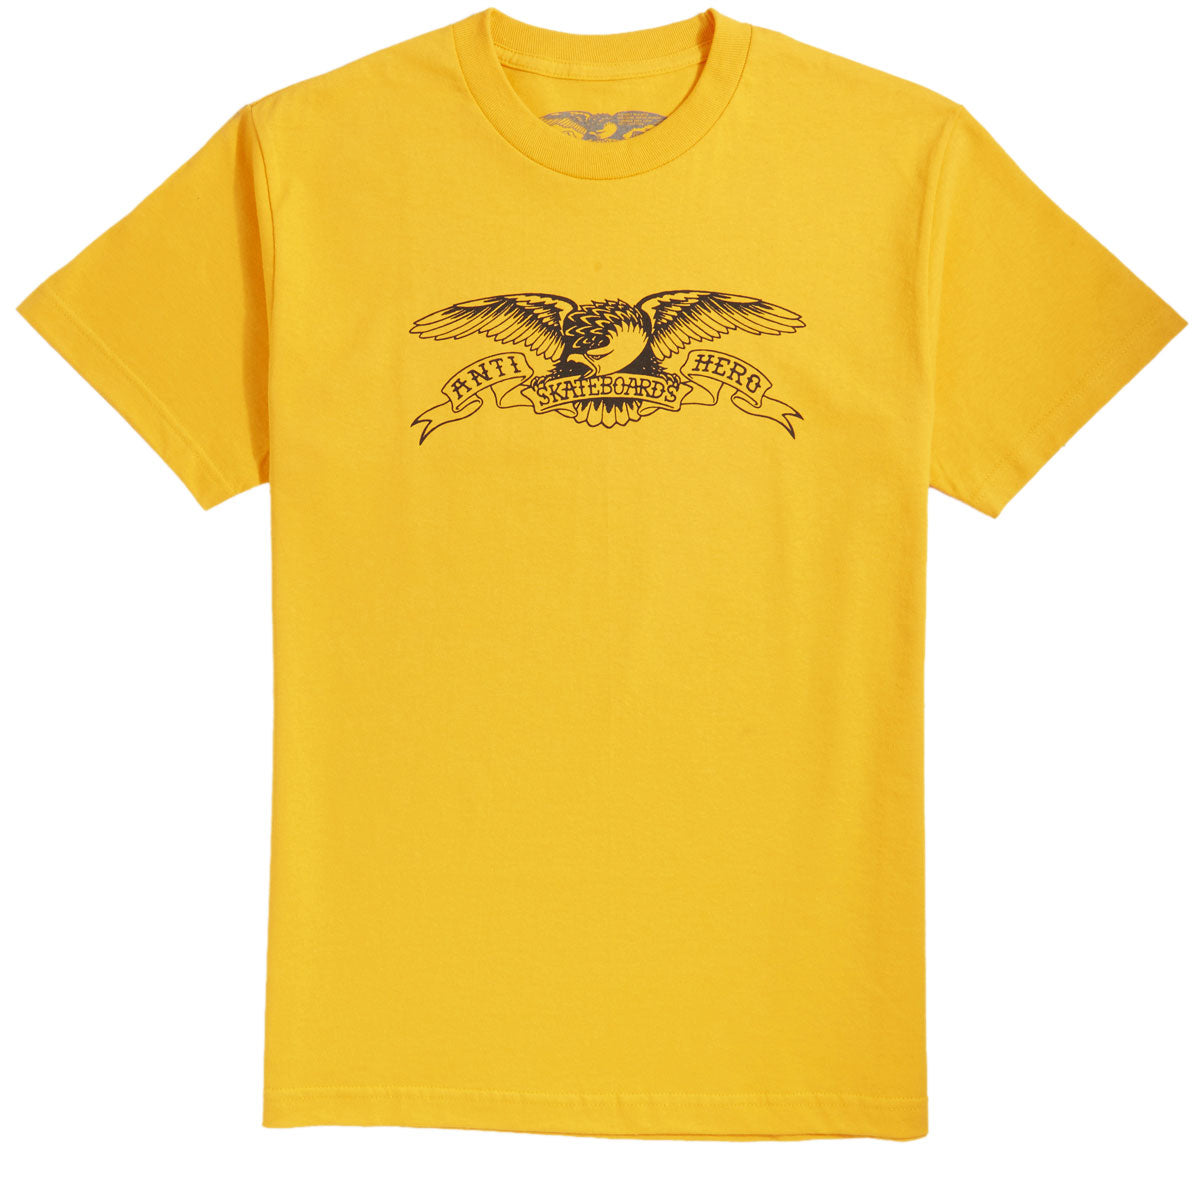 Anti-Hero Basic Eagle T-Shirt - Gold/Black image 1